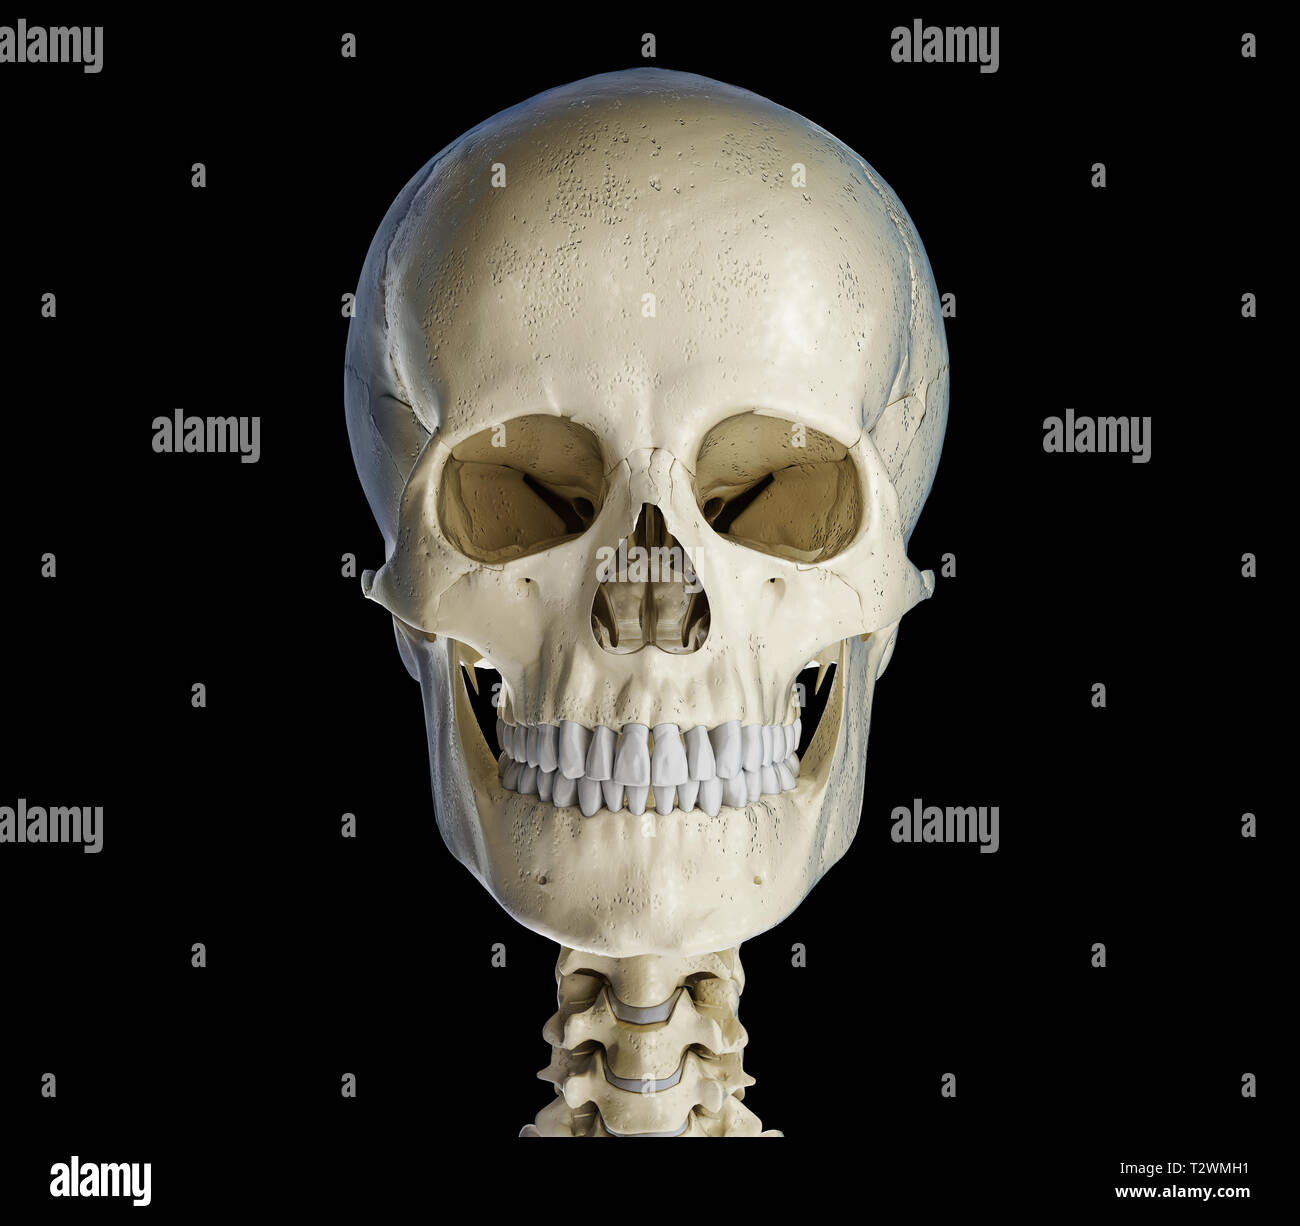 Cranio umano visto dalla parte anteriore. Su sfondo nero. Foto Stock